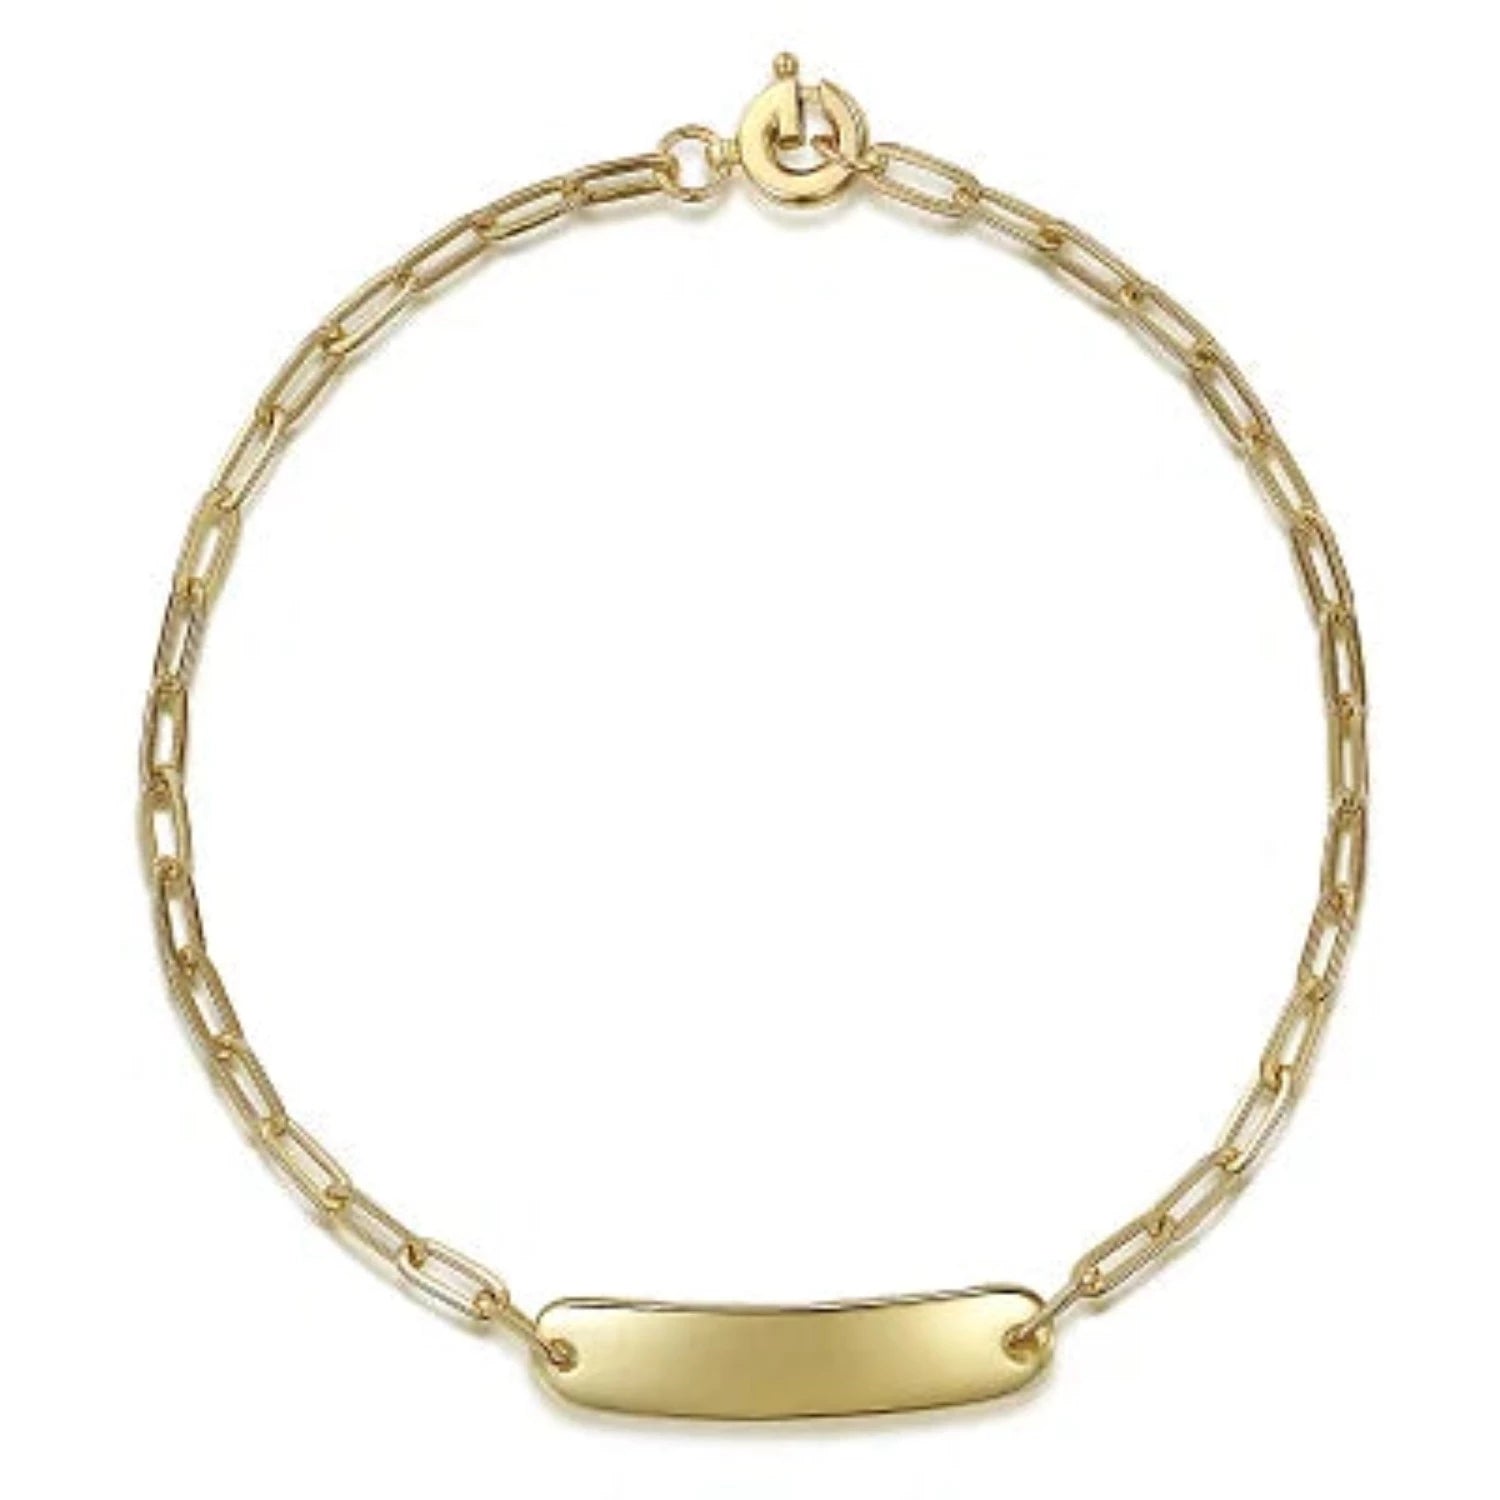 Best bracelet | Simple gold bangle, Gold bracelet for girl, Gold bracelet  simple